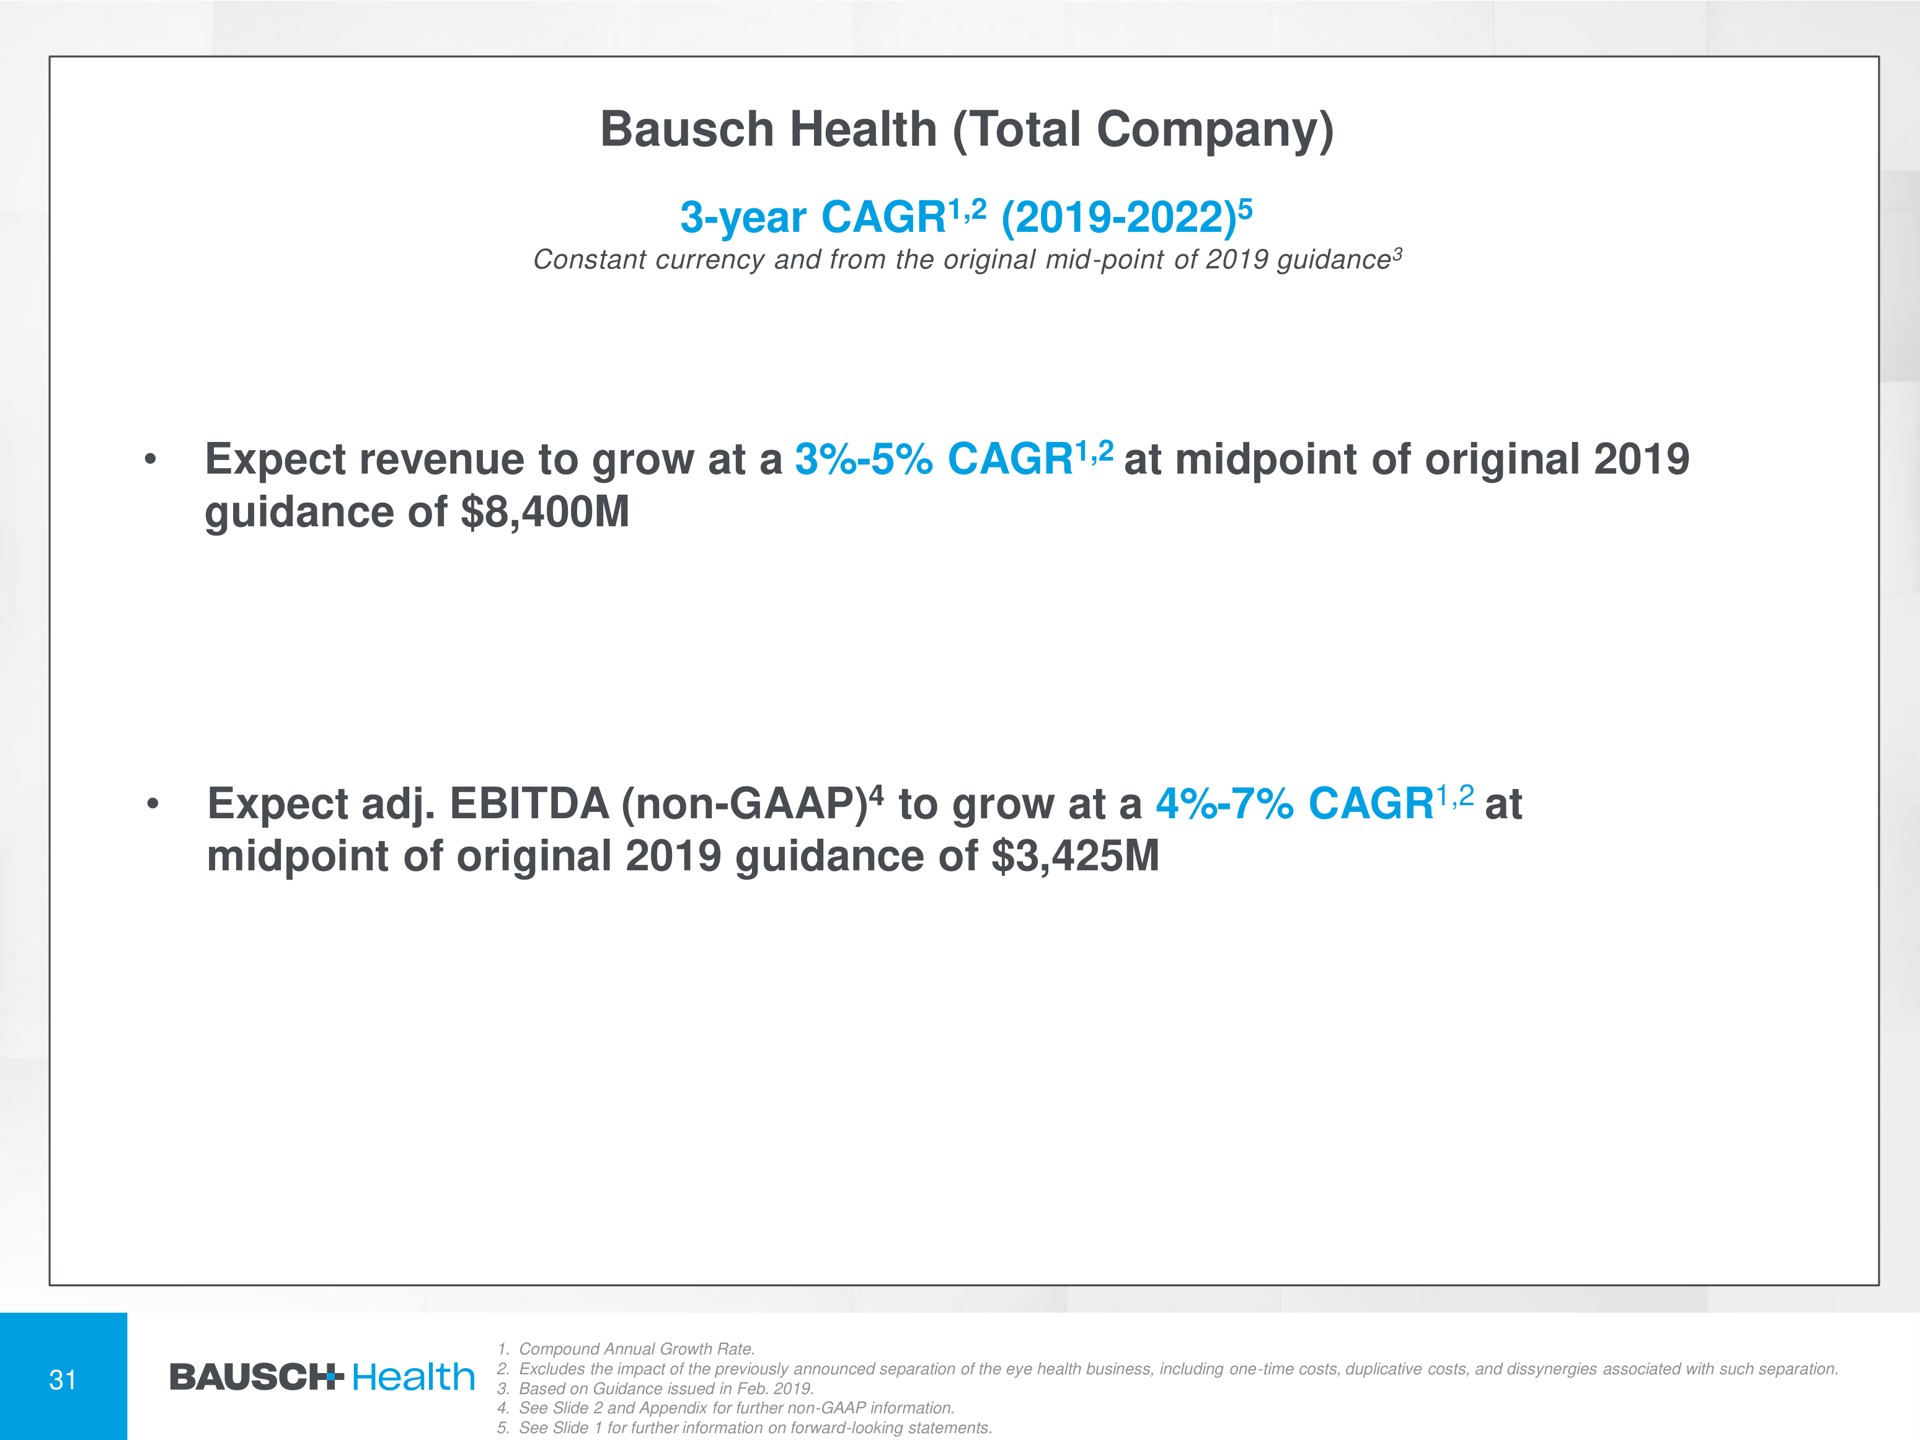  | Bausch Health Companies